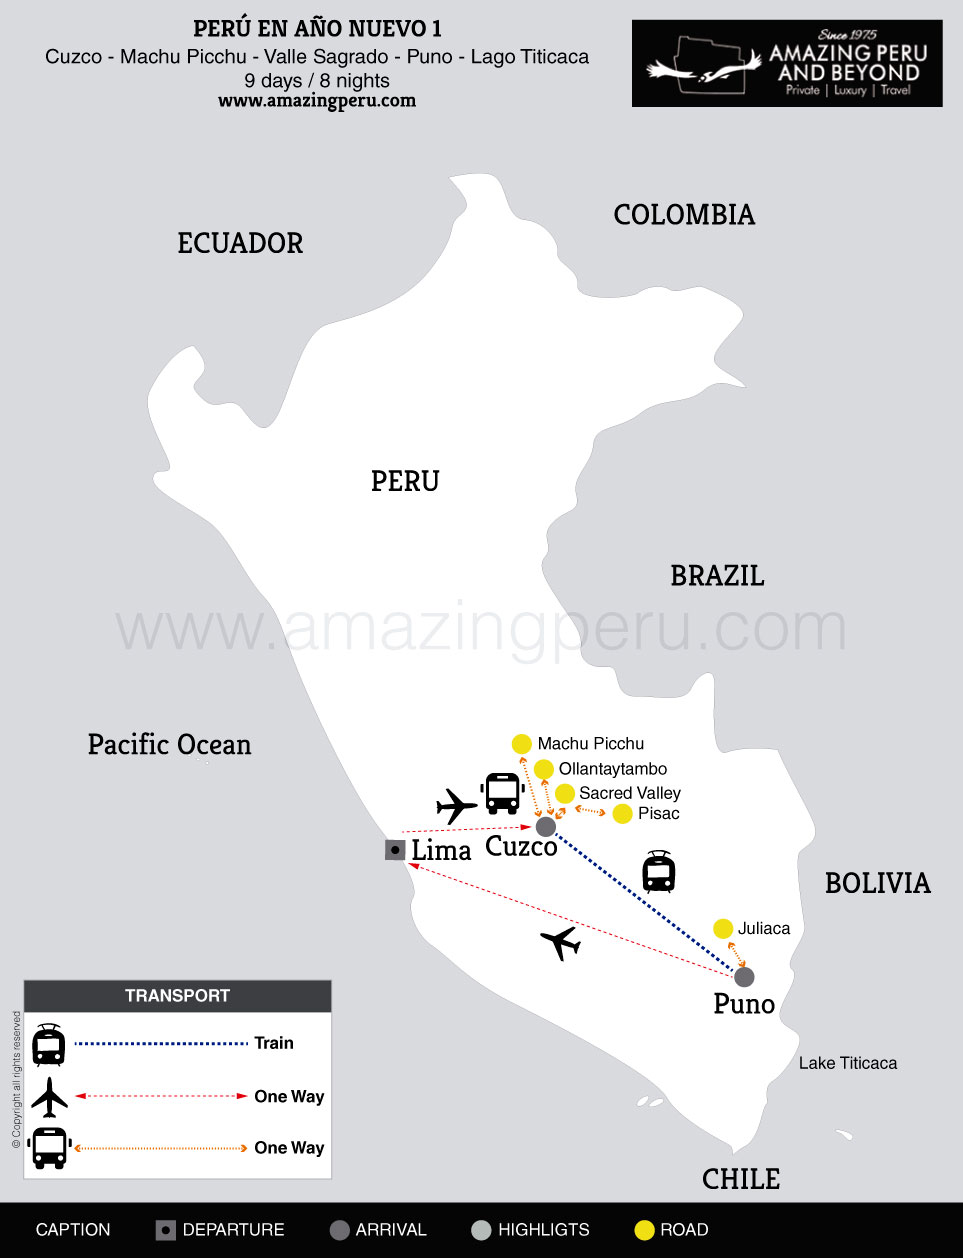 2019-20 Perú en Año Nuevo 1